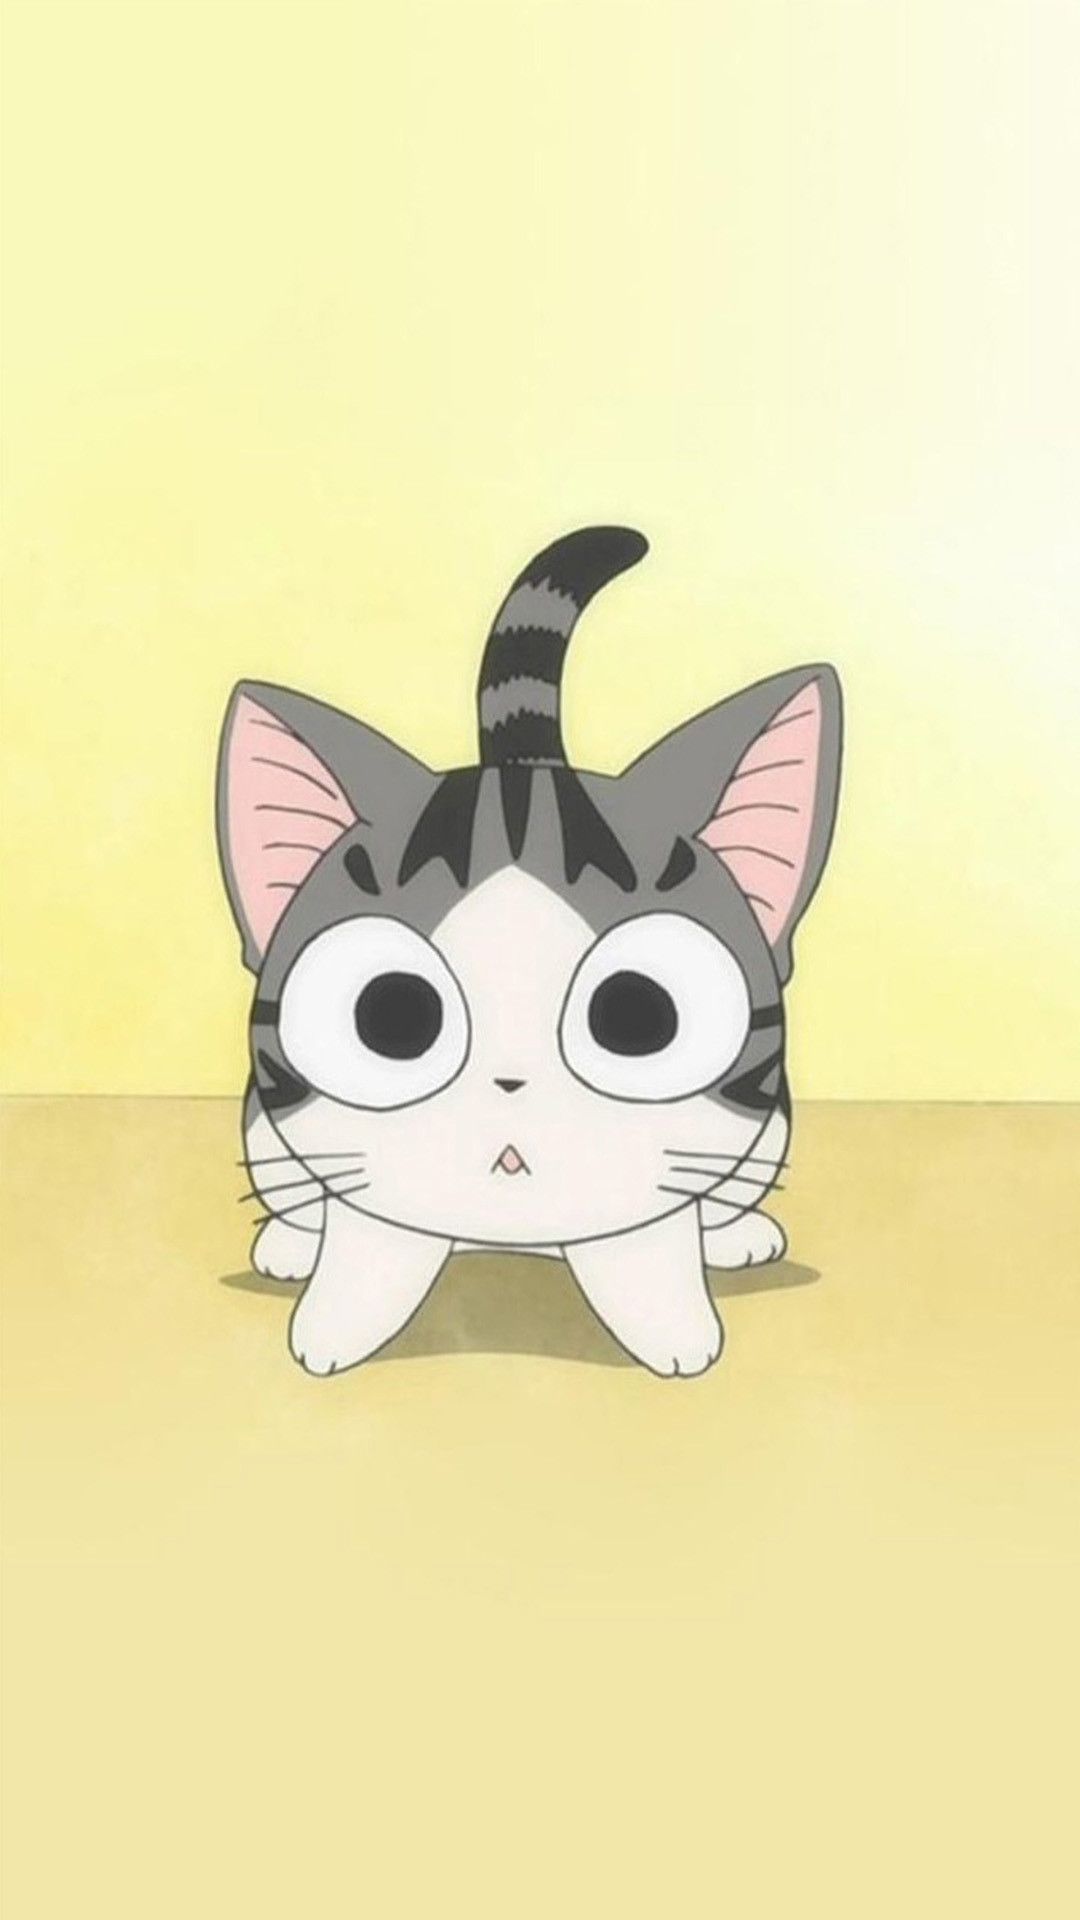 Cute Japanese Cartoon Cat Wallpaper Free Cute Japanese Cartoon Cat Background